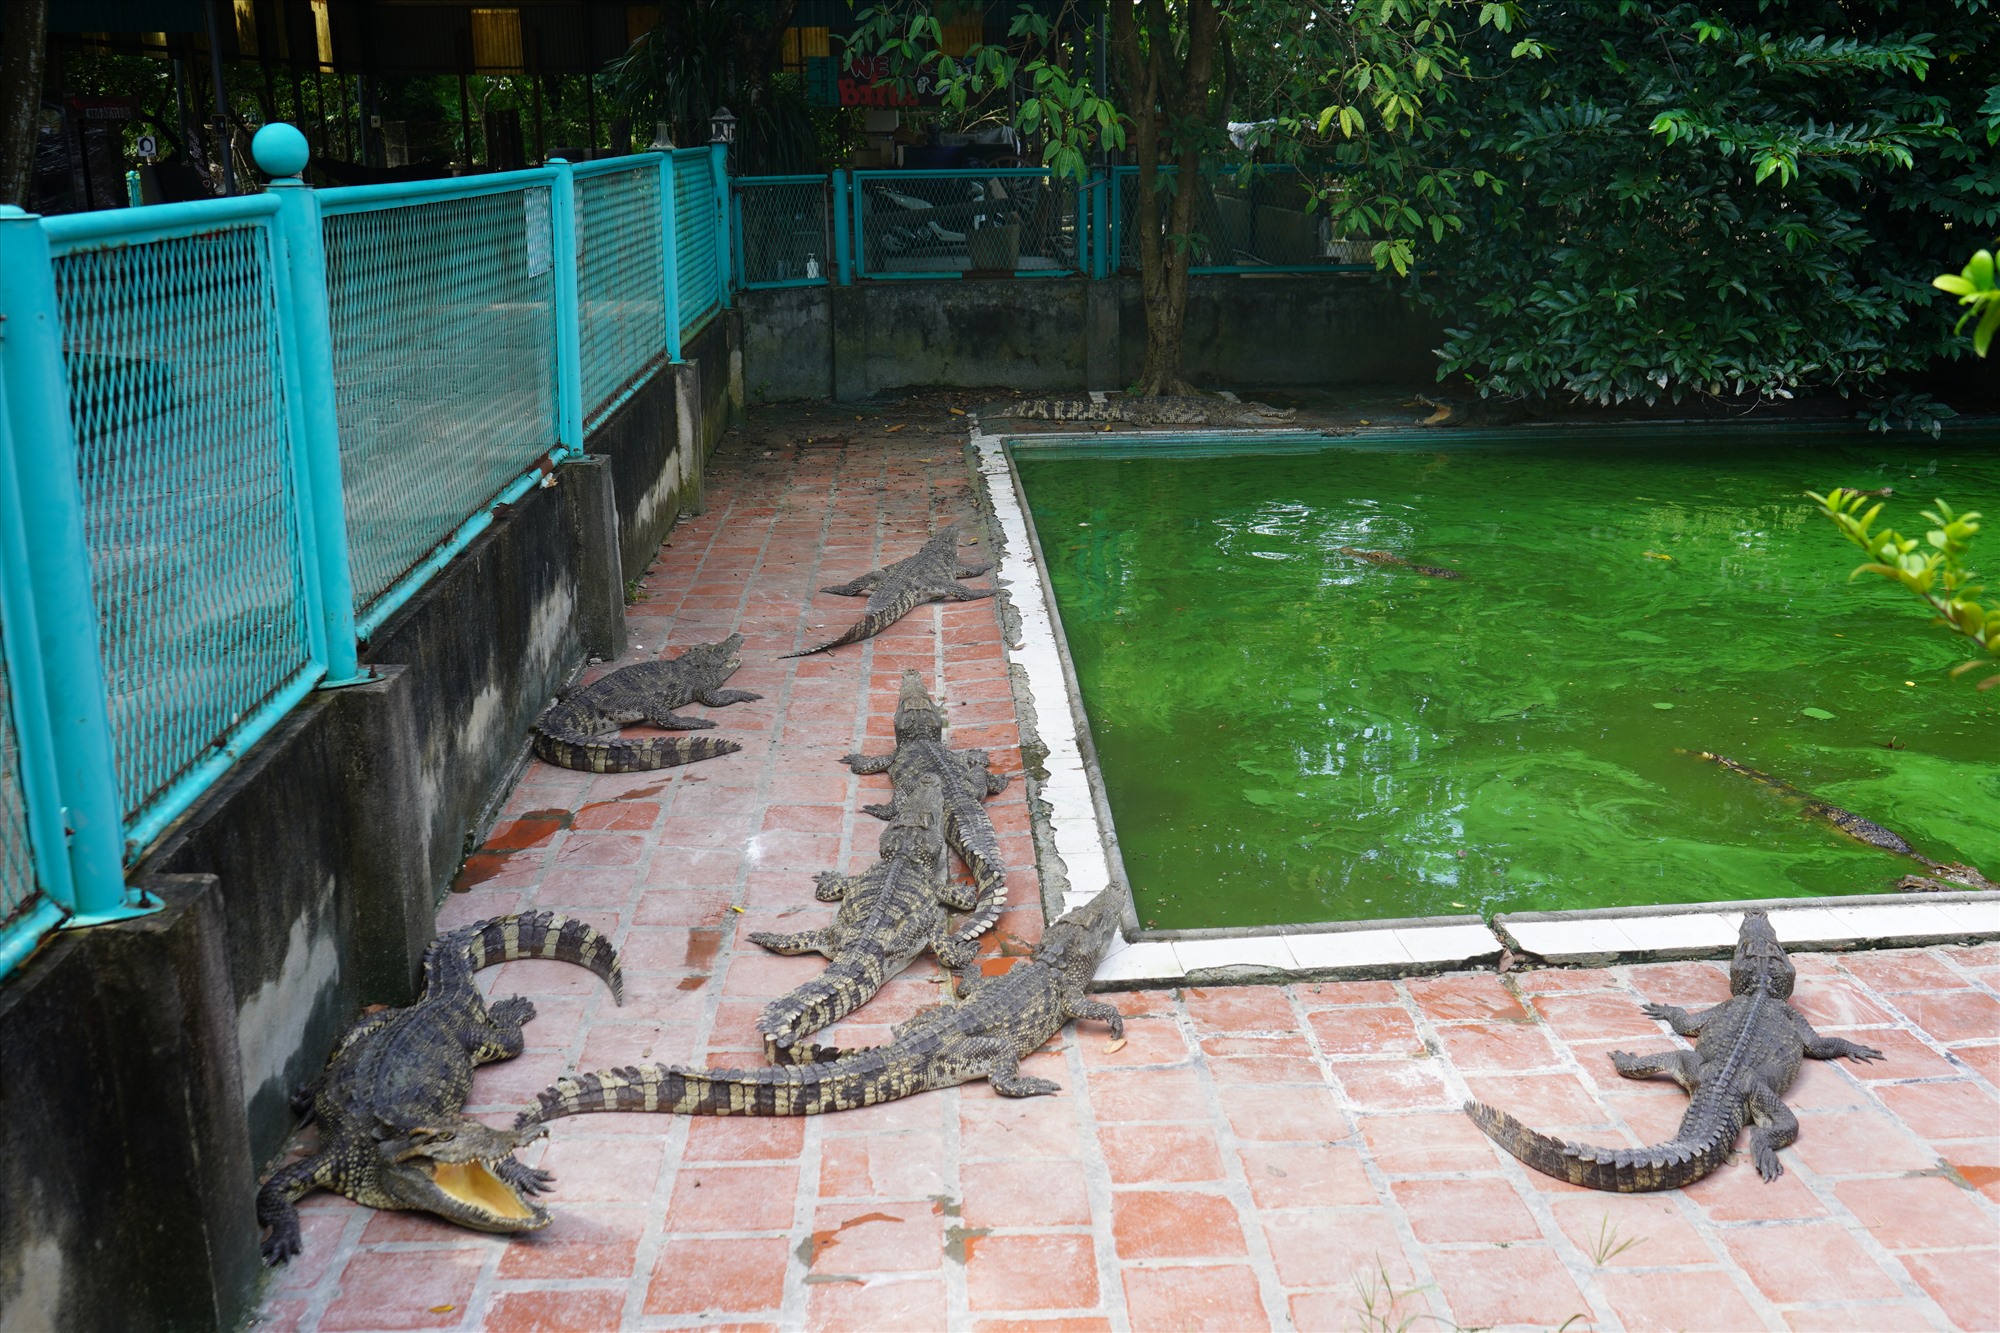 Trang trại của ông Cao Văn Tuấn hay còn được gọi là ông Tuấn “cá sấu” rộng gần 10.000 m2 nằm bên đường Quốc lộ 5 thuộc địa bàn phường Hùng Vương, quận Hồng Bàng, Hải Phòng. Đây là trang trại có lượng cá sấu lớn nhất miền Bắc. Ảnh: Hoàng Khôi